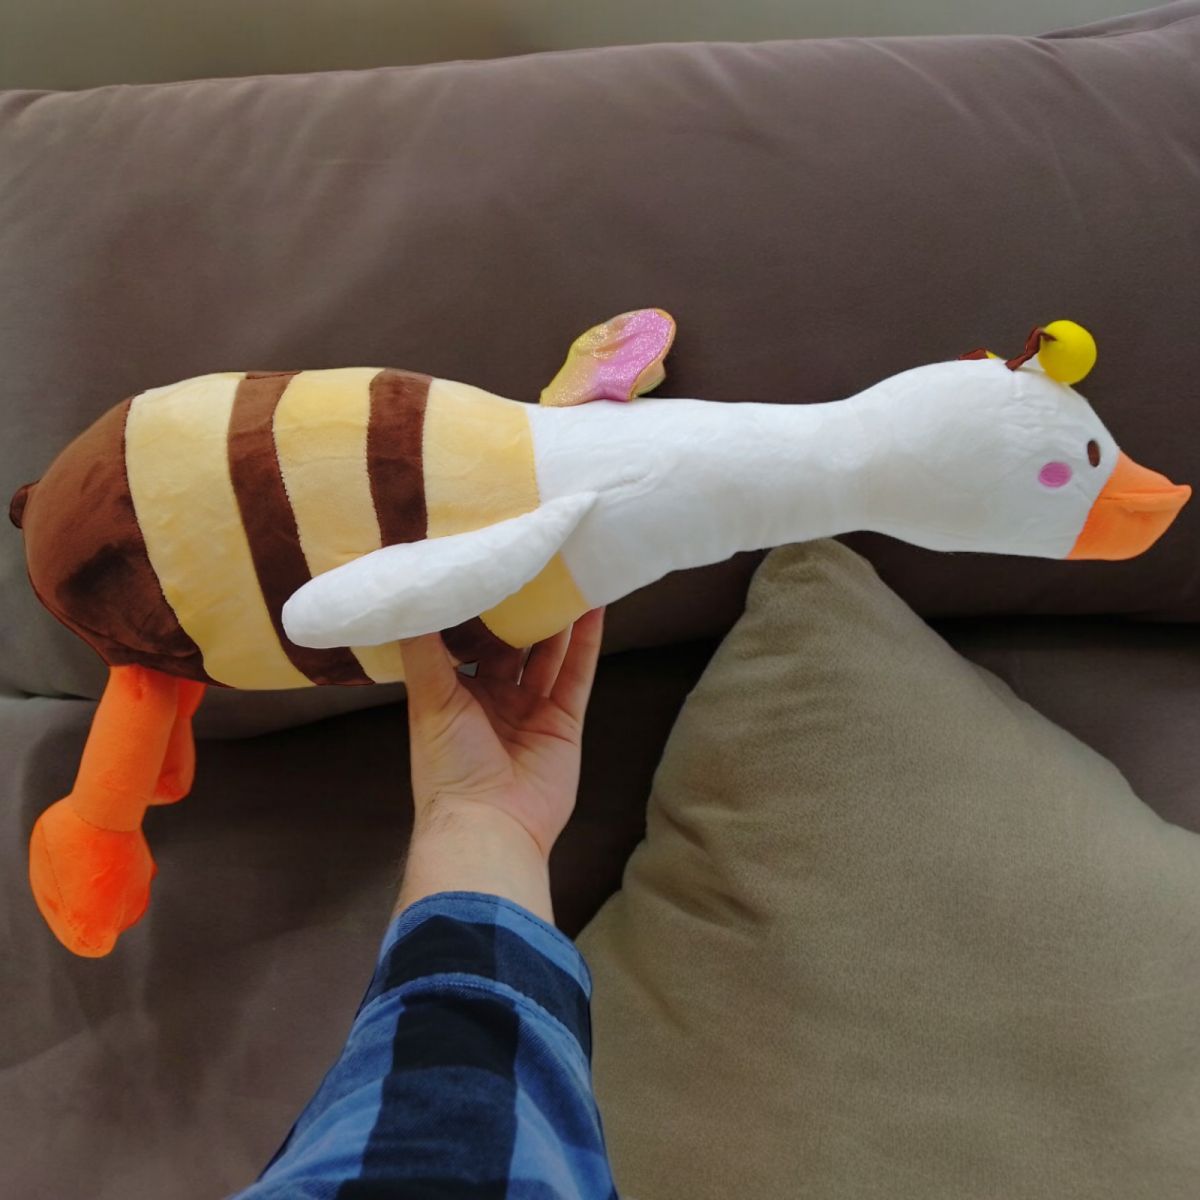 Мягкая игрушка "Гусь-обнимусь" в костюме пчелки (65 см)